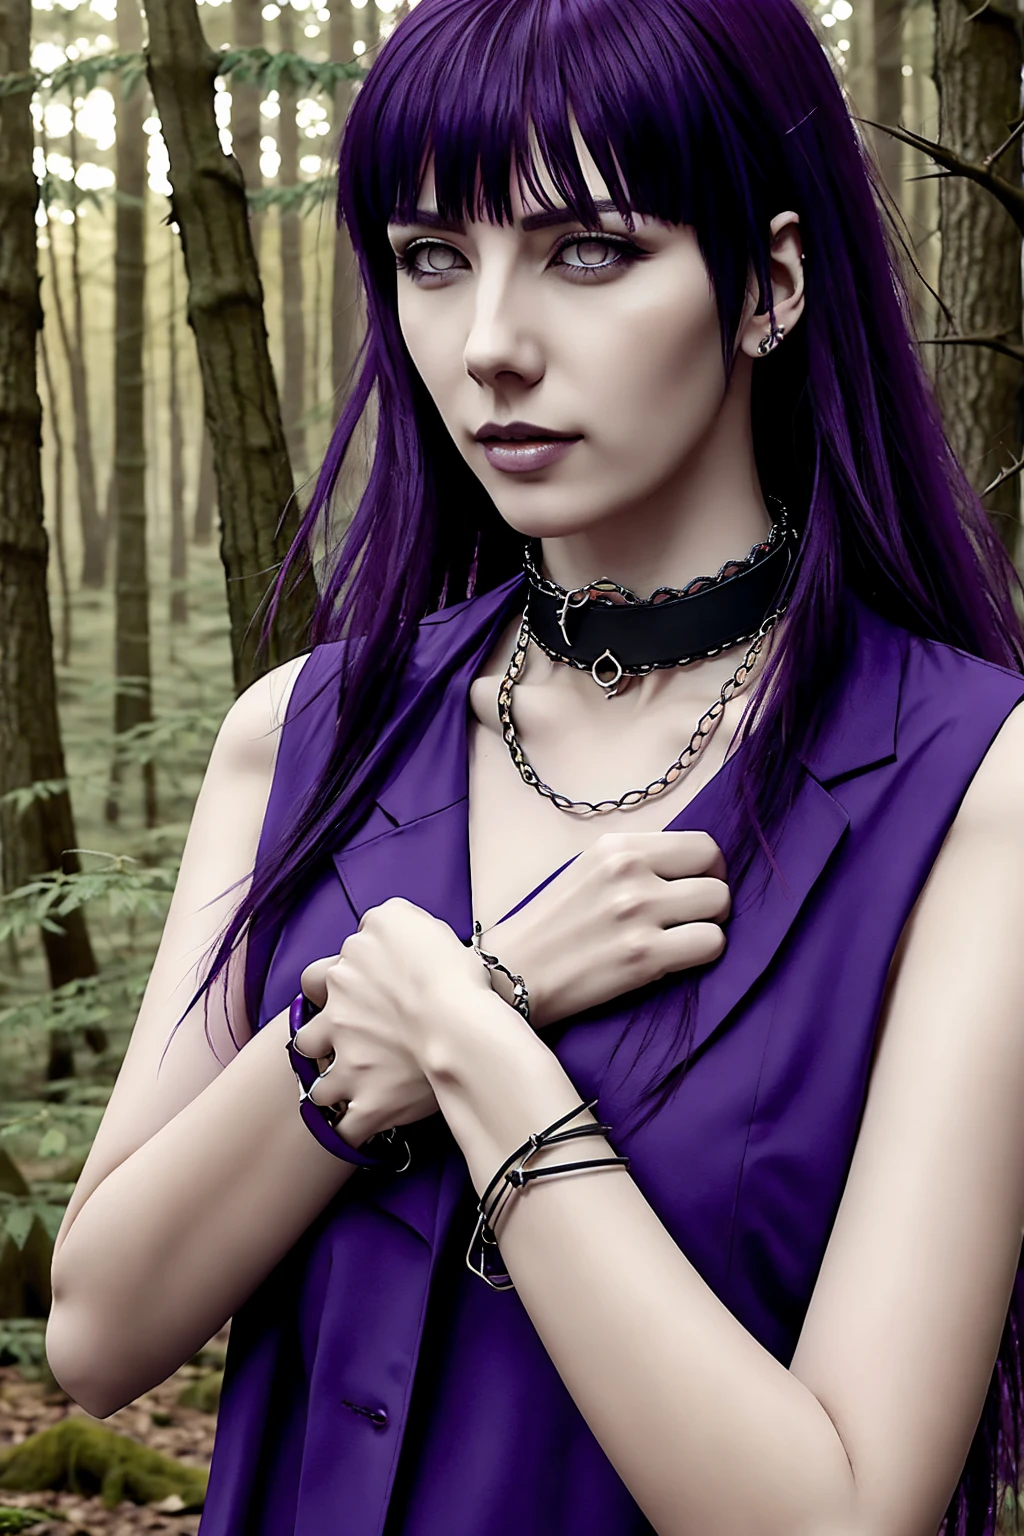 Hyuuga Hinata, cabelo roxo, pele pálida, roupas punk rock, colar de espinhos no pescoço, pulseiras de espinhos nos pulsos, no meio de uma floresta